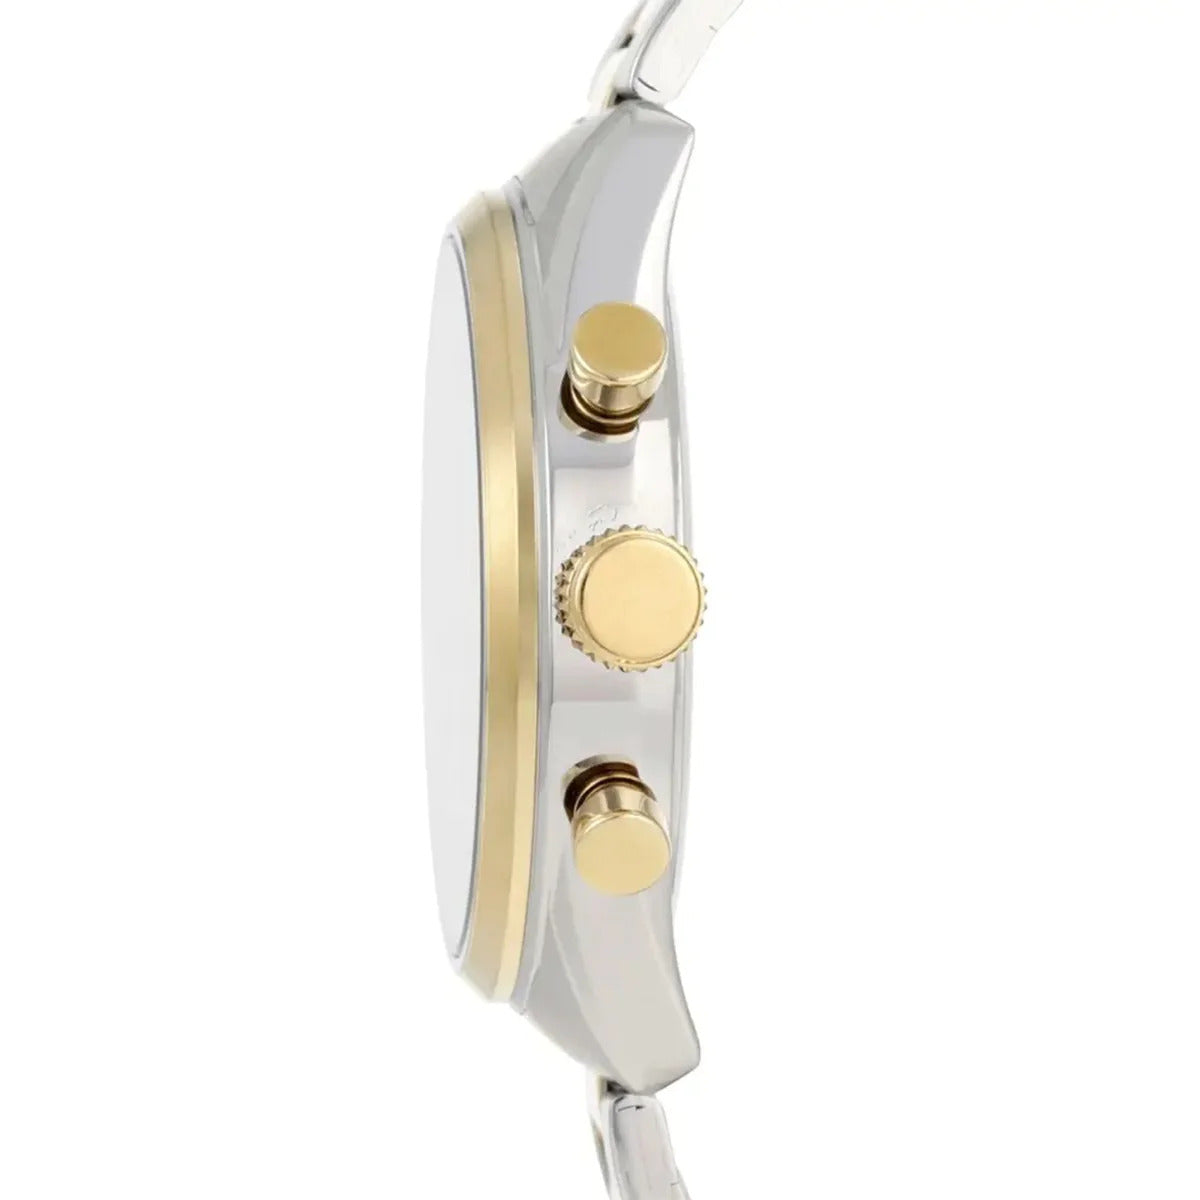 Festina Men's Quartz Watch Gold Dial - F16821/2